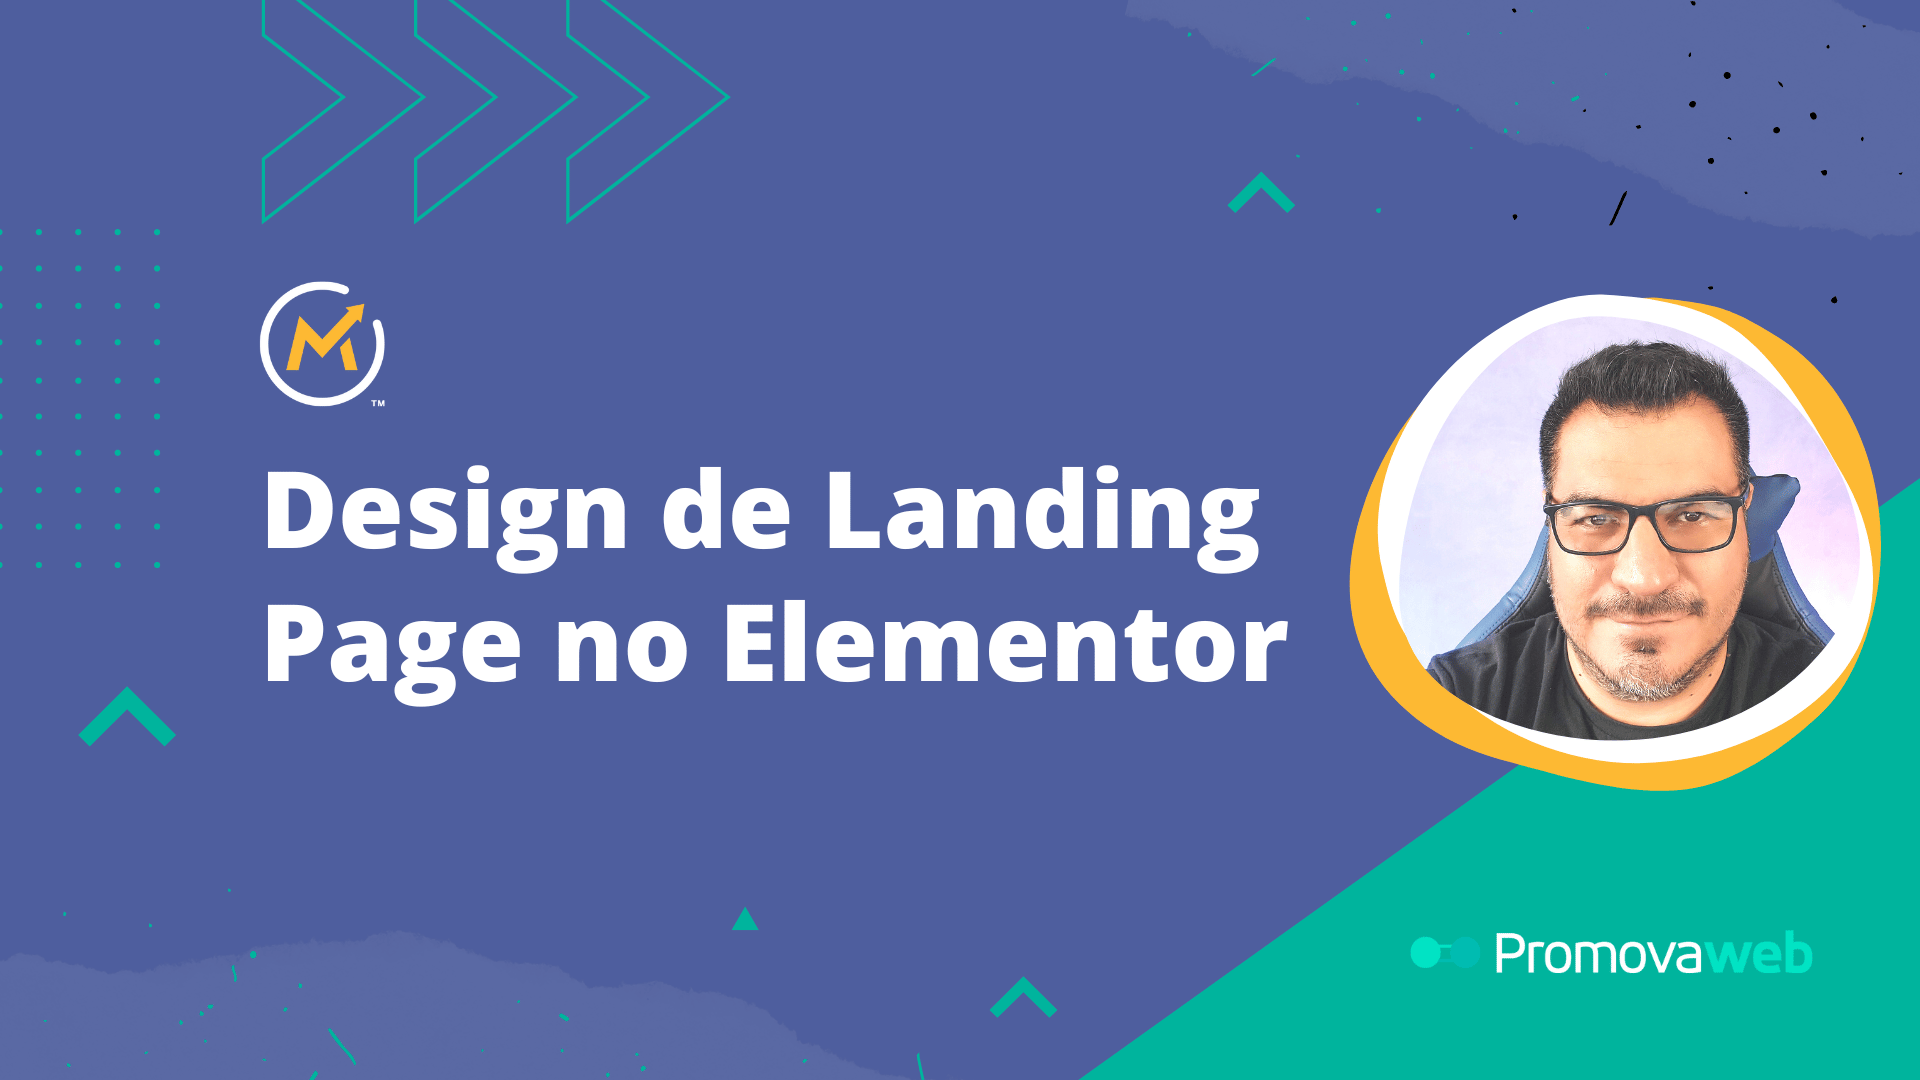 Design de Landing Page no Elementor